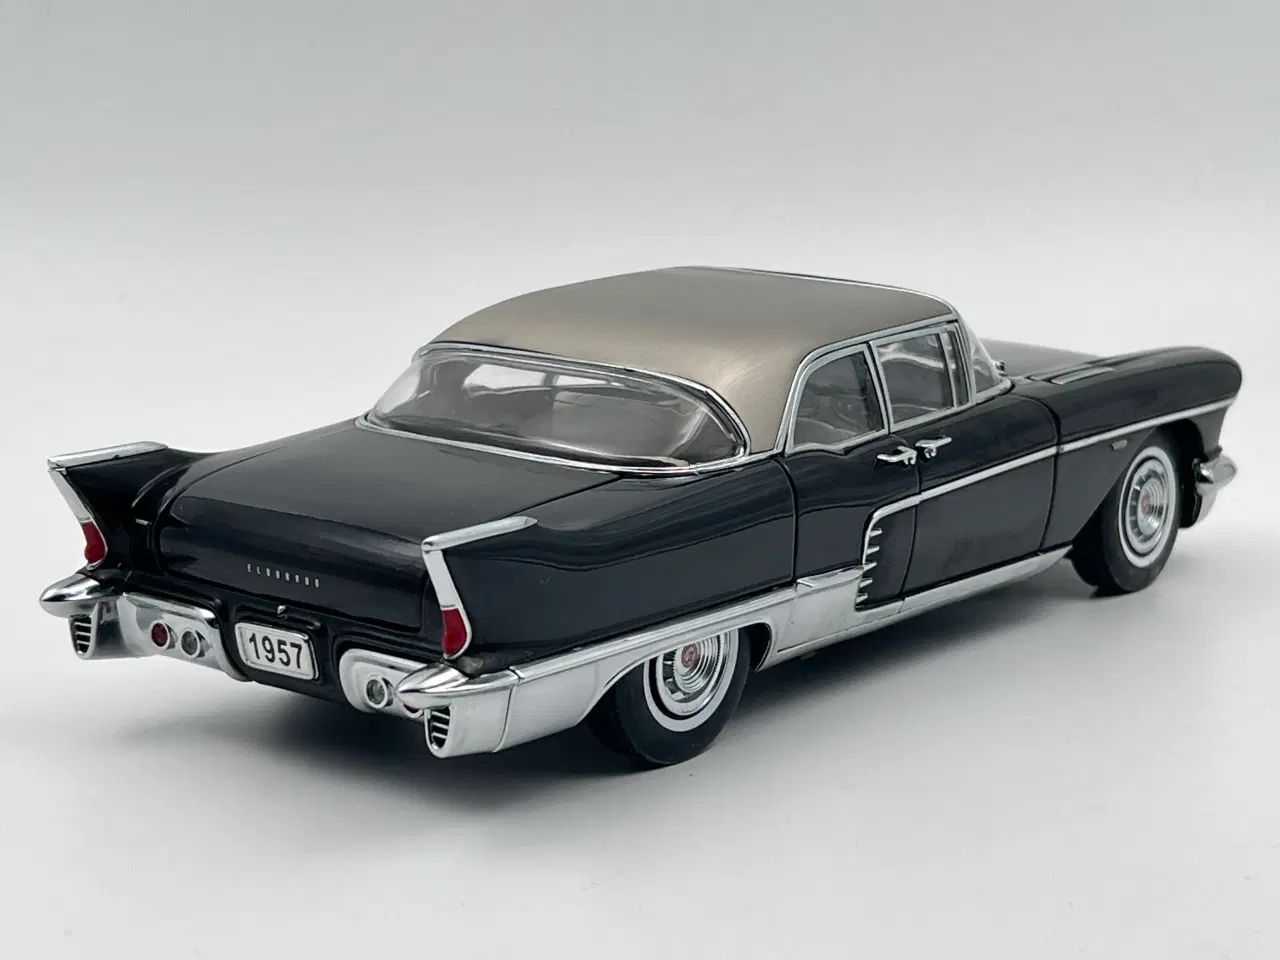 Billede 4 - 1957 Cadillac Eldorado Brougham 1:18 